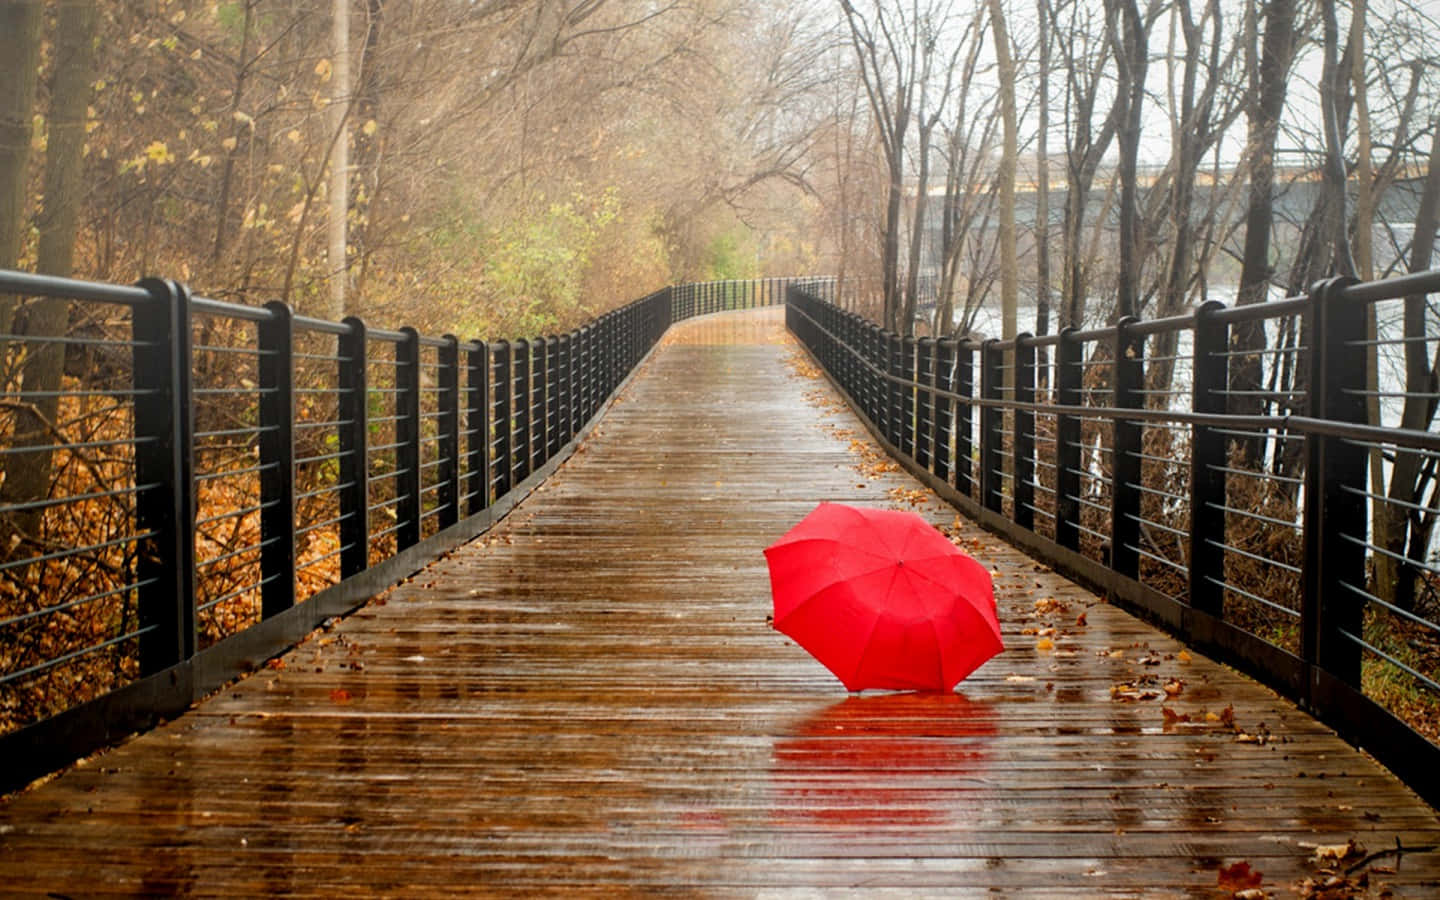 Imagende Un Paraguas Rojo En Un Sendero De Madera En Un Día Lluvioso.